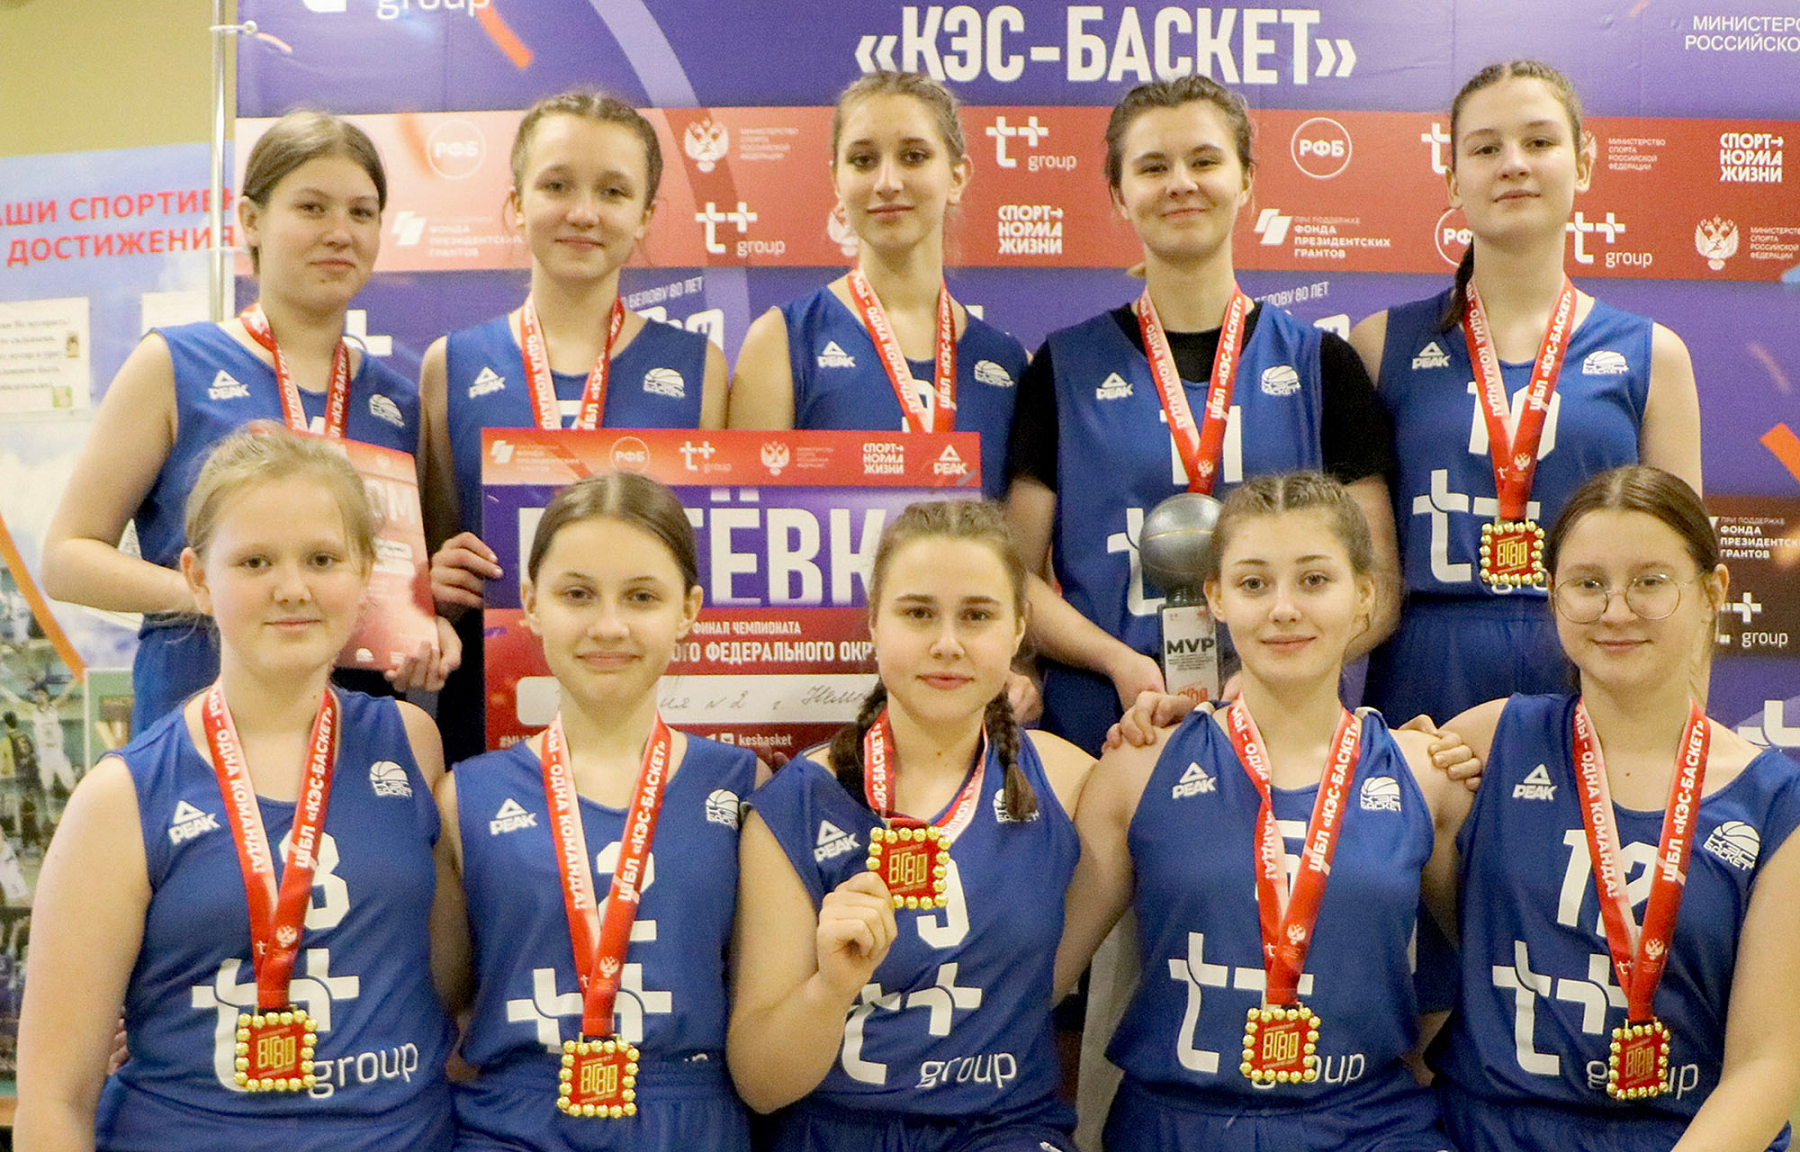 Баскетболисты из Нелидово одержали победу в региональном этапе Чемпионата ШБЛ «КЭС-БАСКЕТ»